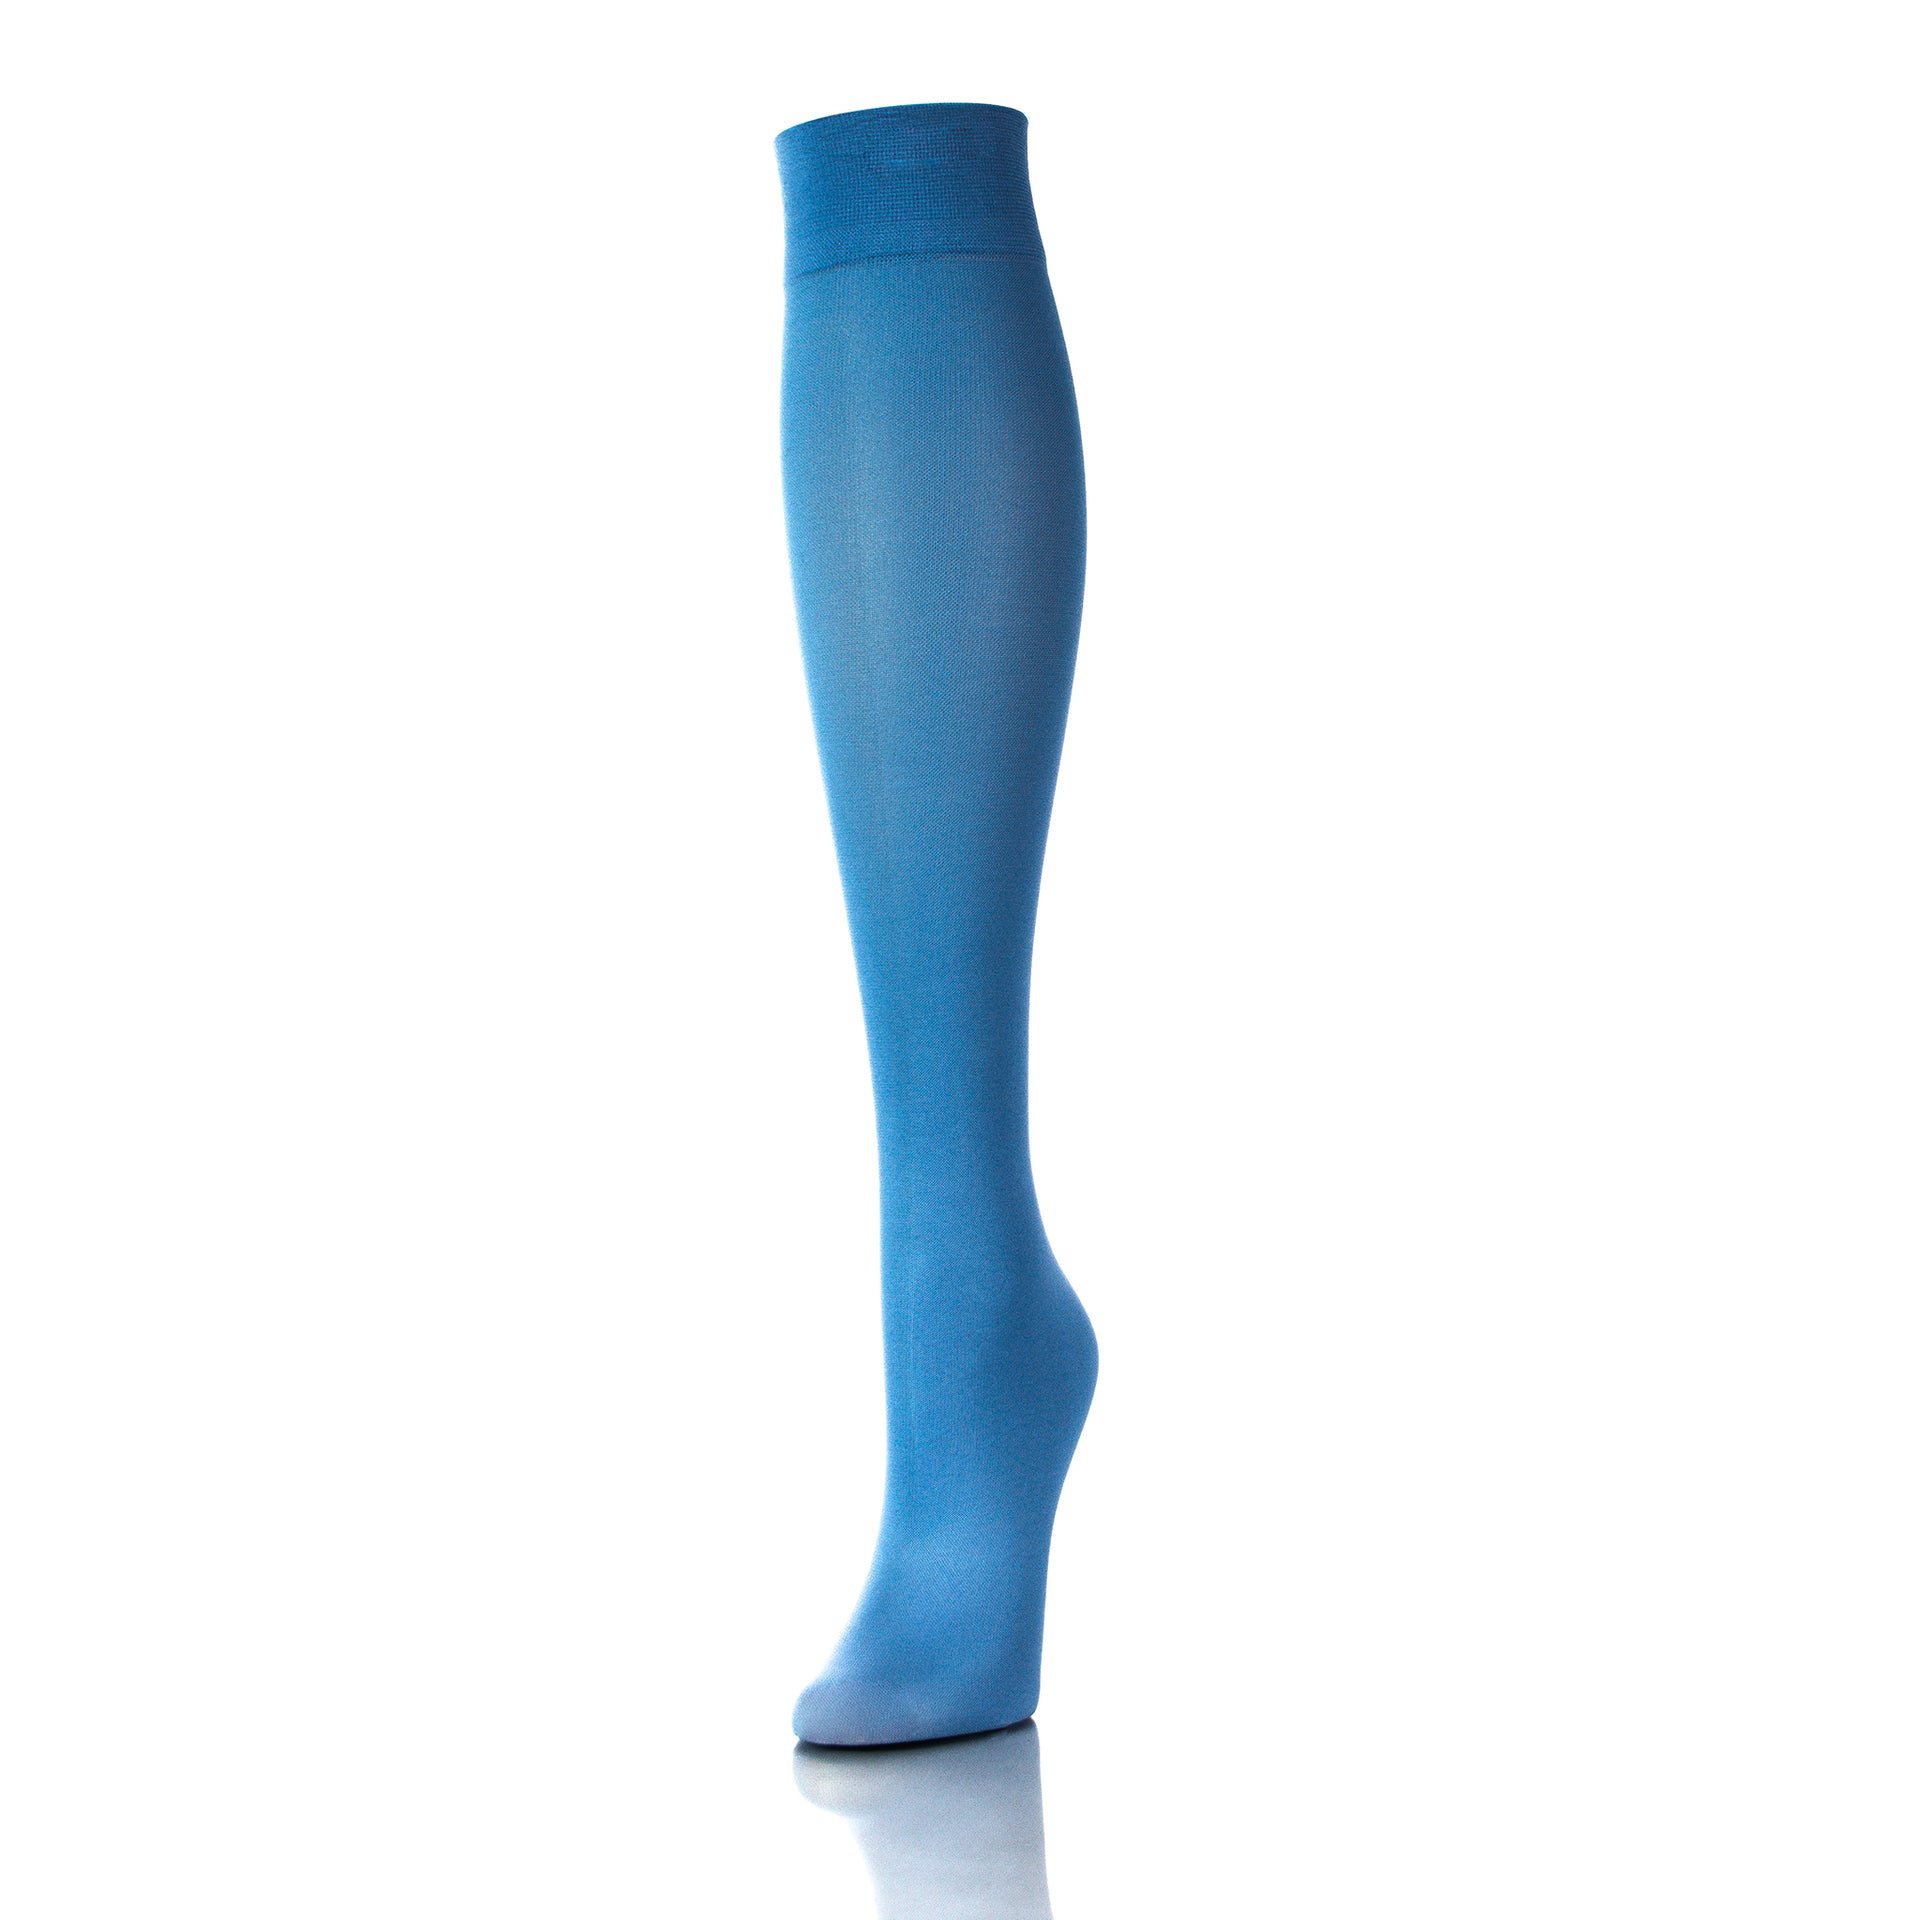 Bas de compression 20-30 mmHg bleu ciel pour femme, vue extérieure de la jambe, design moderne - Softmedi